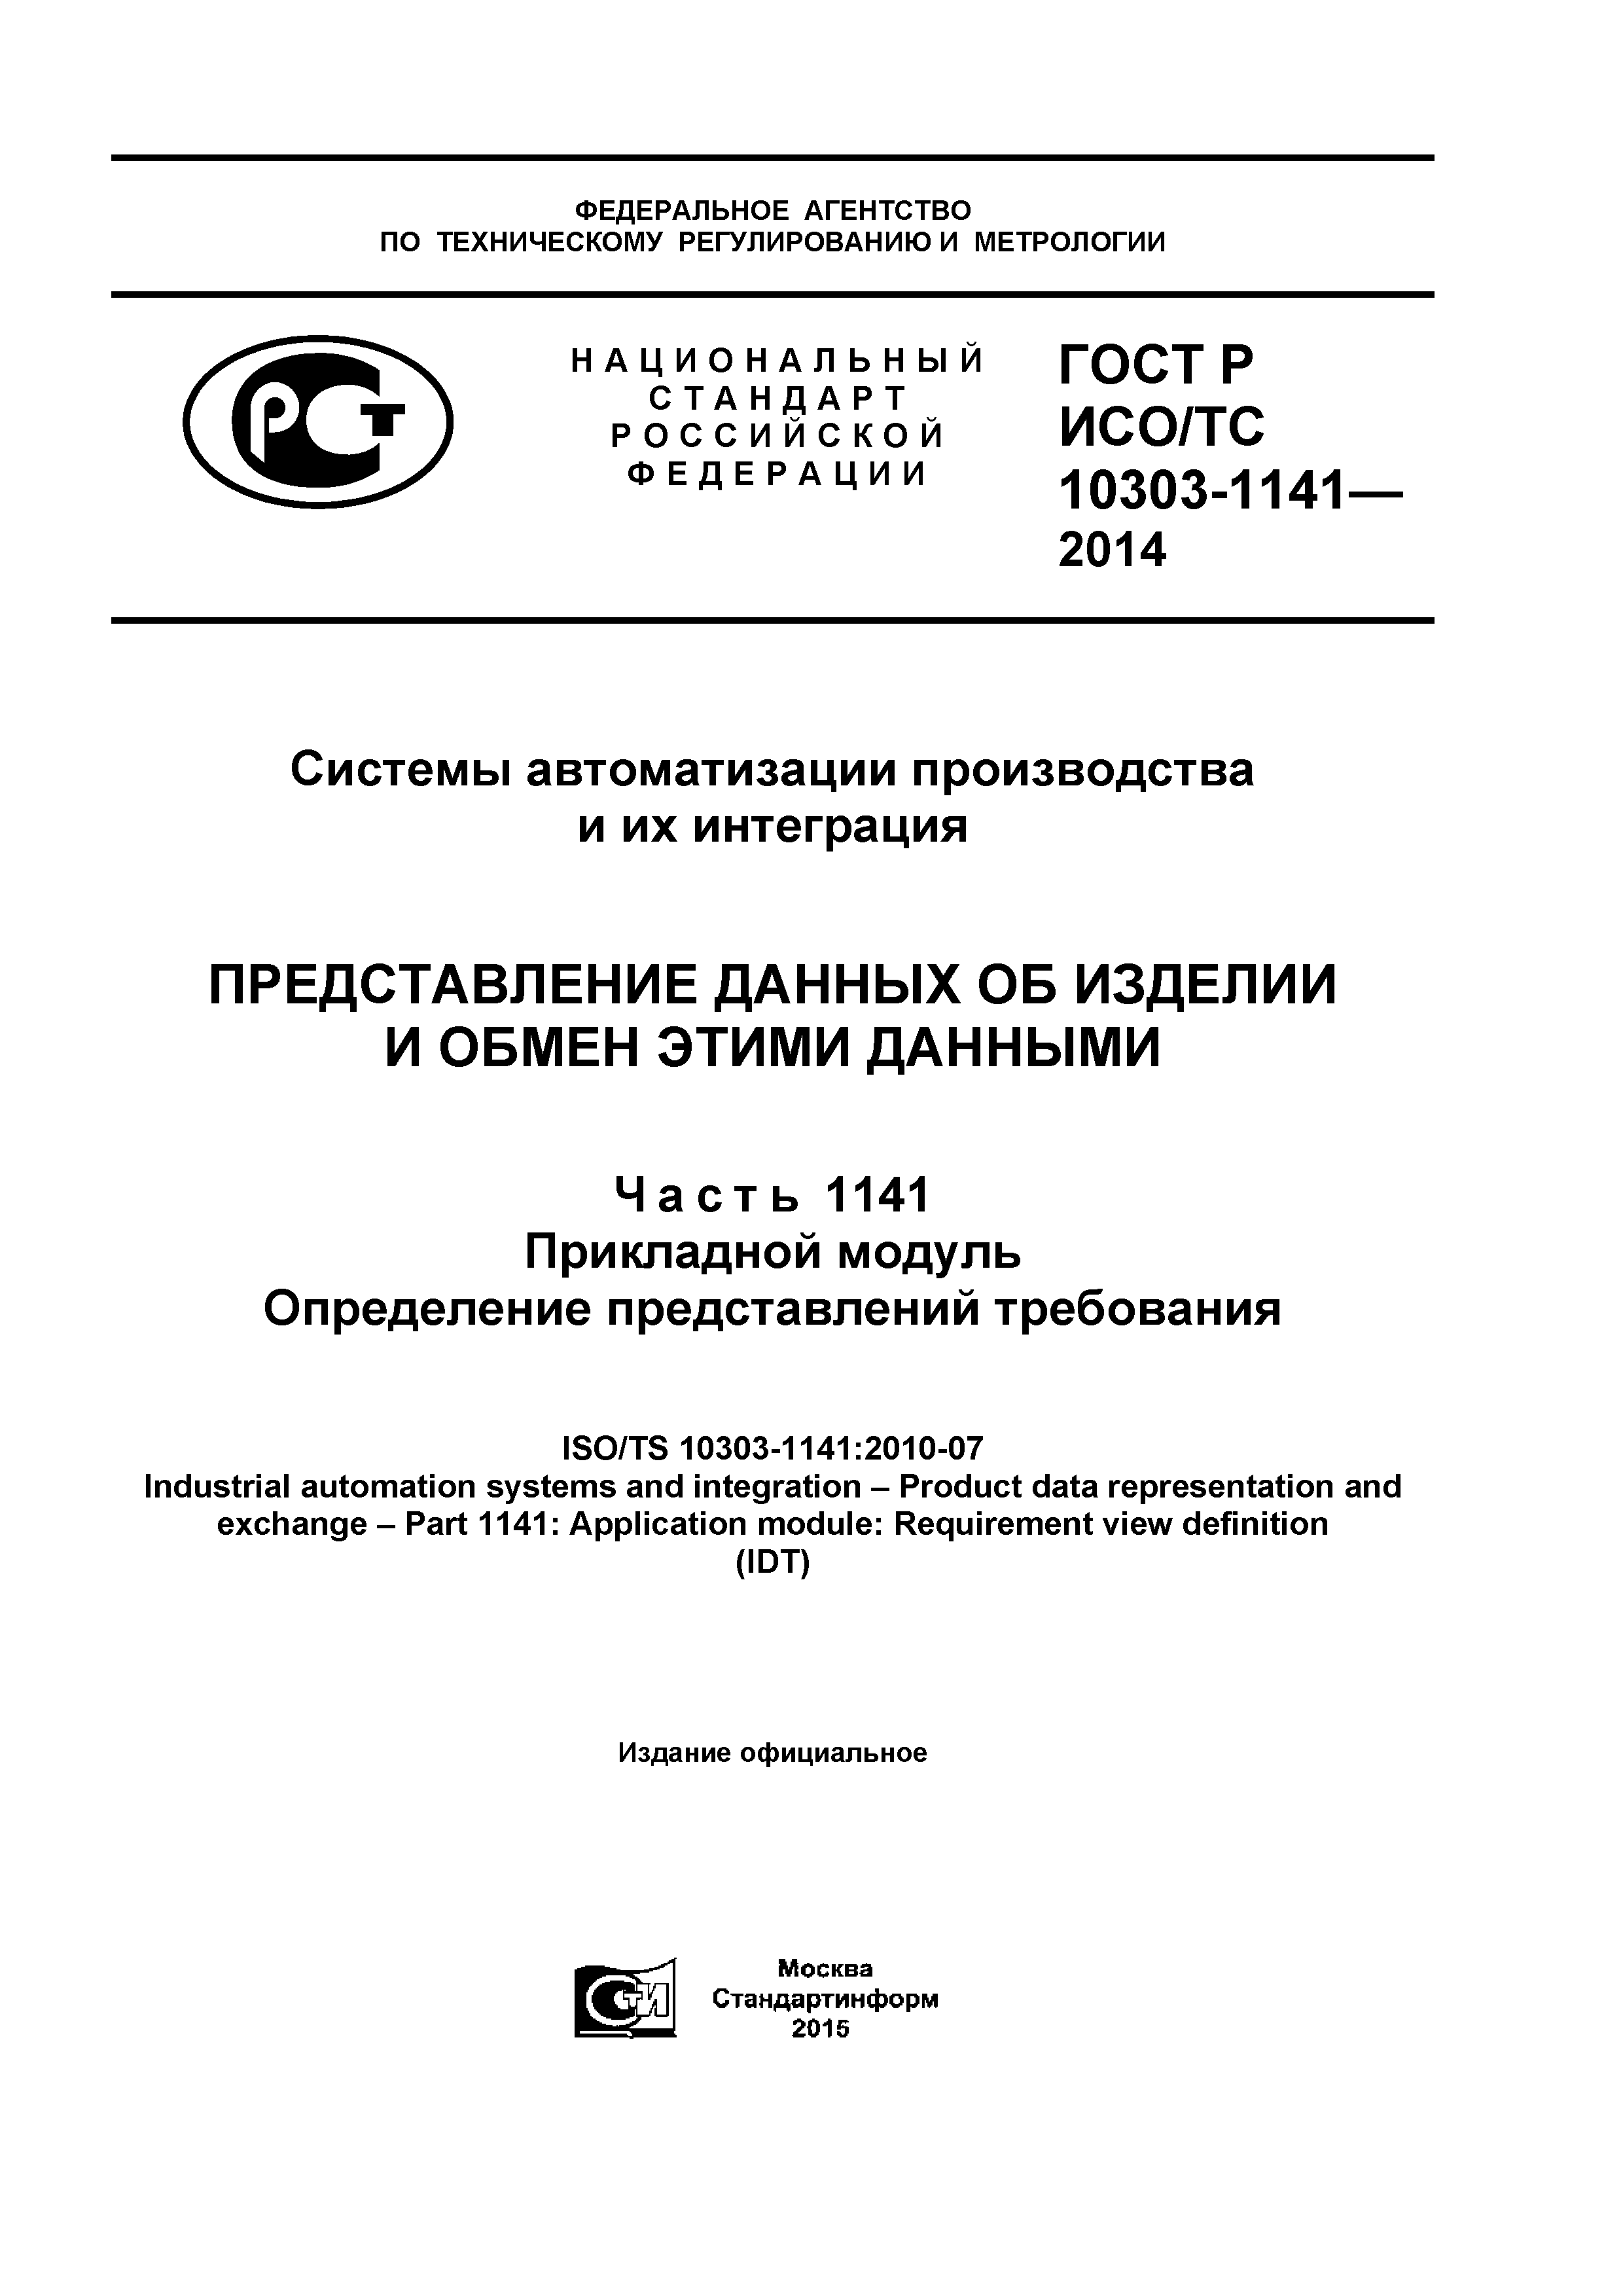 ГОСТ Р ИСО/ТС 10303-1141-2014